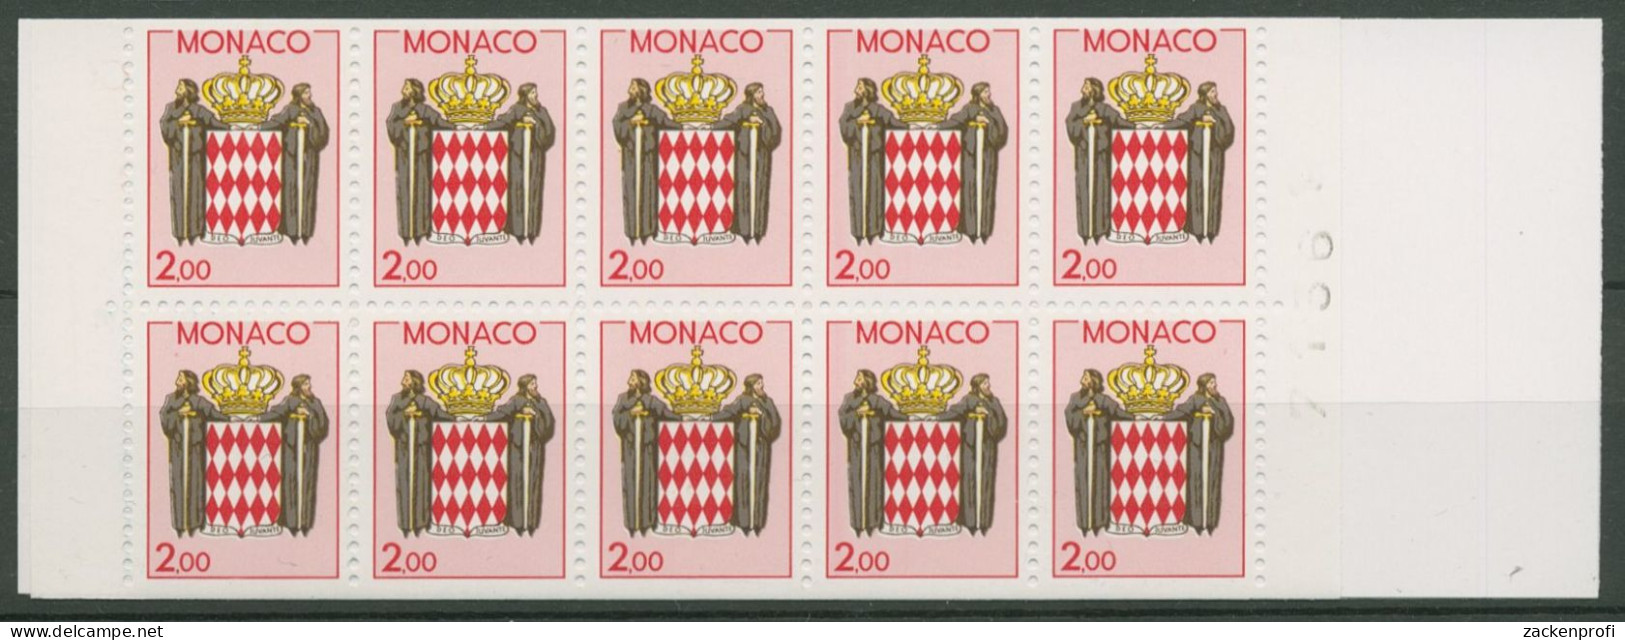 Monaco 1988 Landeswappen Markenheftchen MH 0-2 Postfrisch (C60931) - Markenheftchen